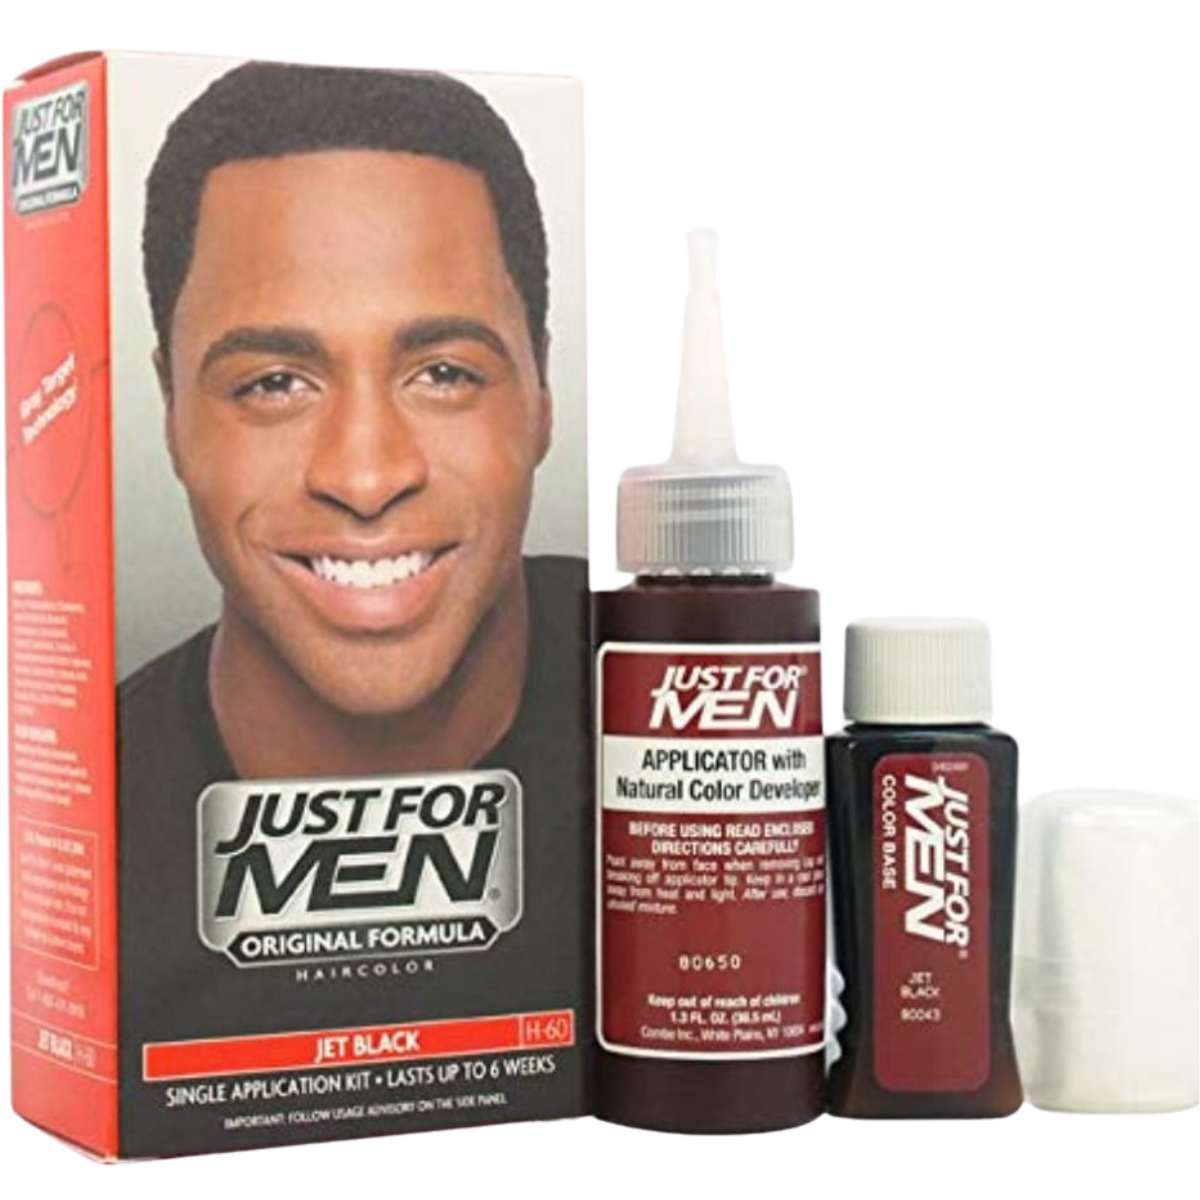 tinte para el cabello h 60 just for men negro azabache ecomprar en onlineshoppingcenterg Colombia centro de compras en linea